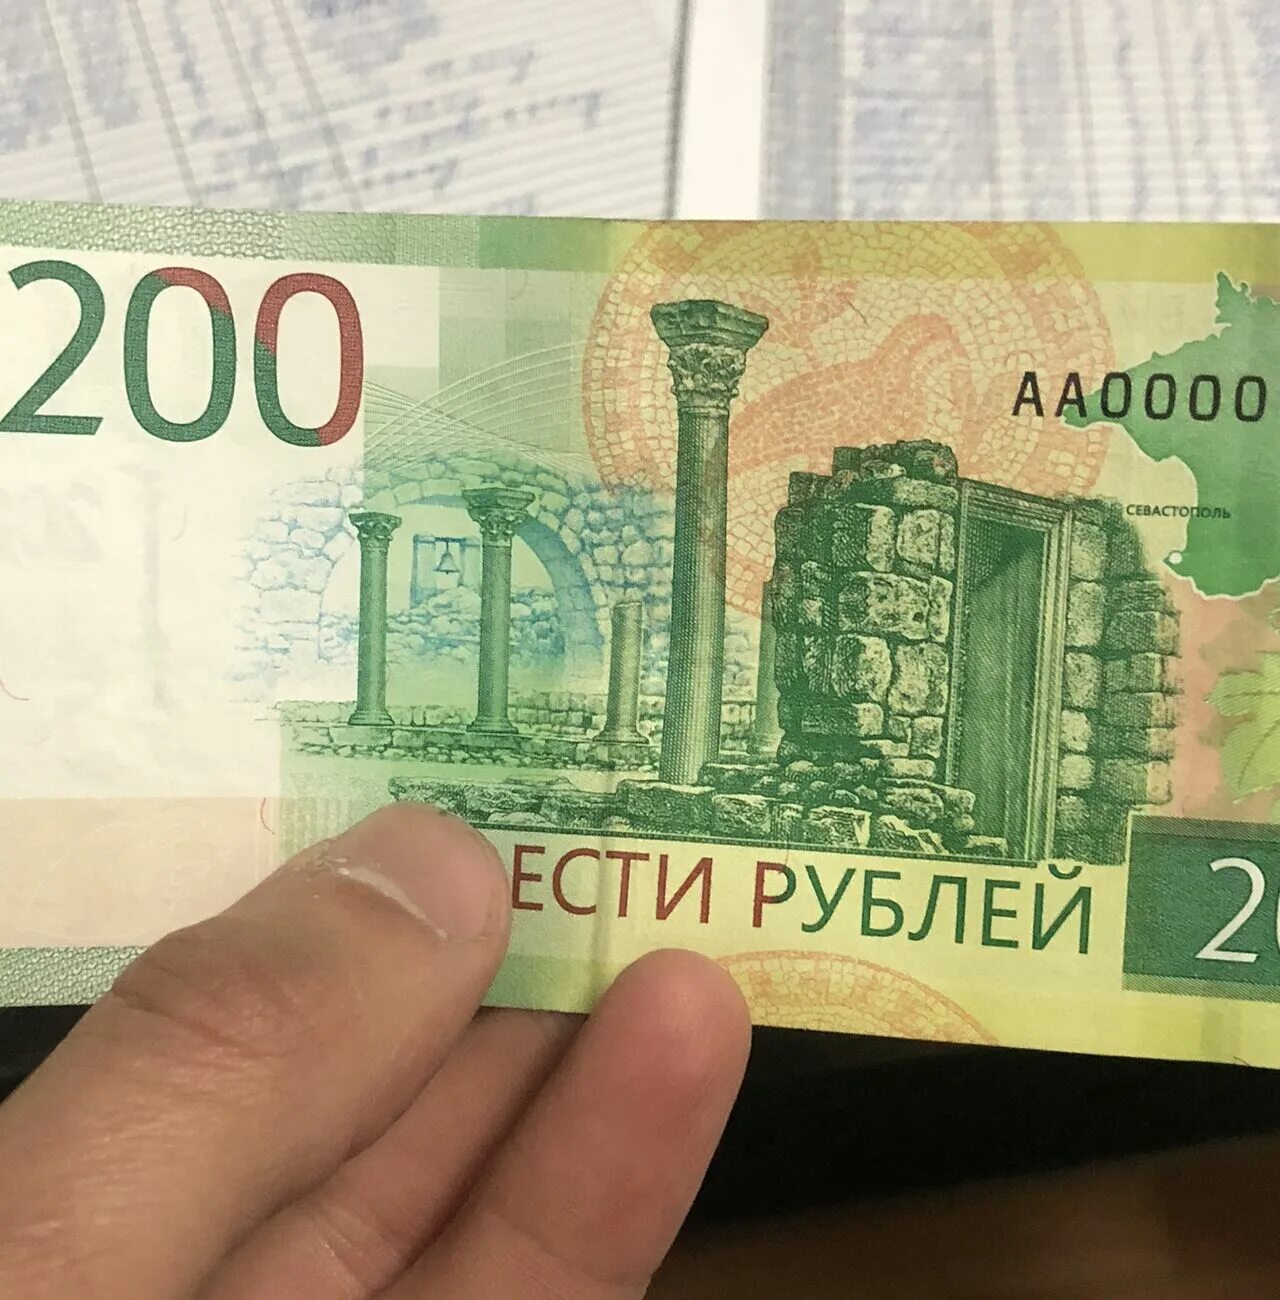 200 рублей бумага. Купюра 200 рублей. Новая 200 рублевая купюра. 200 Рублей новая купюра. 200 Рублей настоящая.